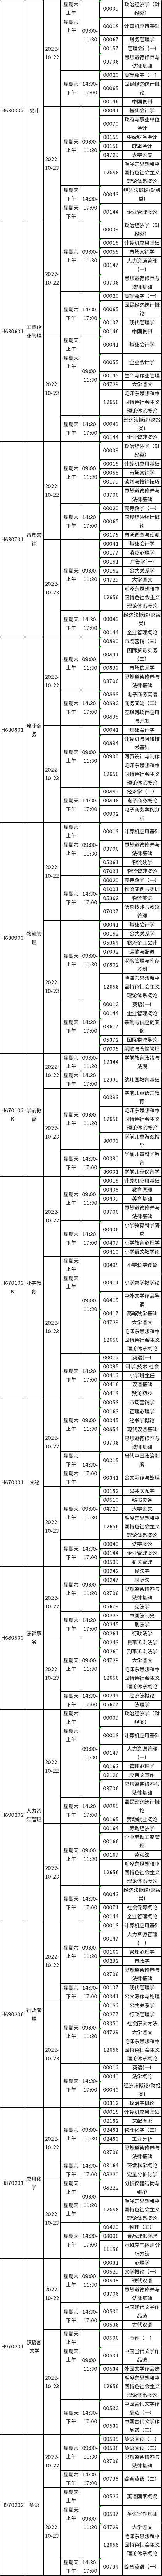 四川省2022年10月自考考试科目安排表